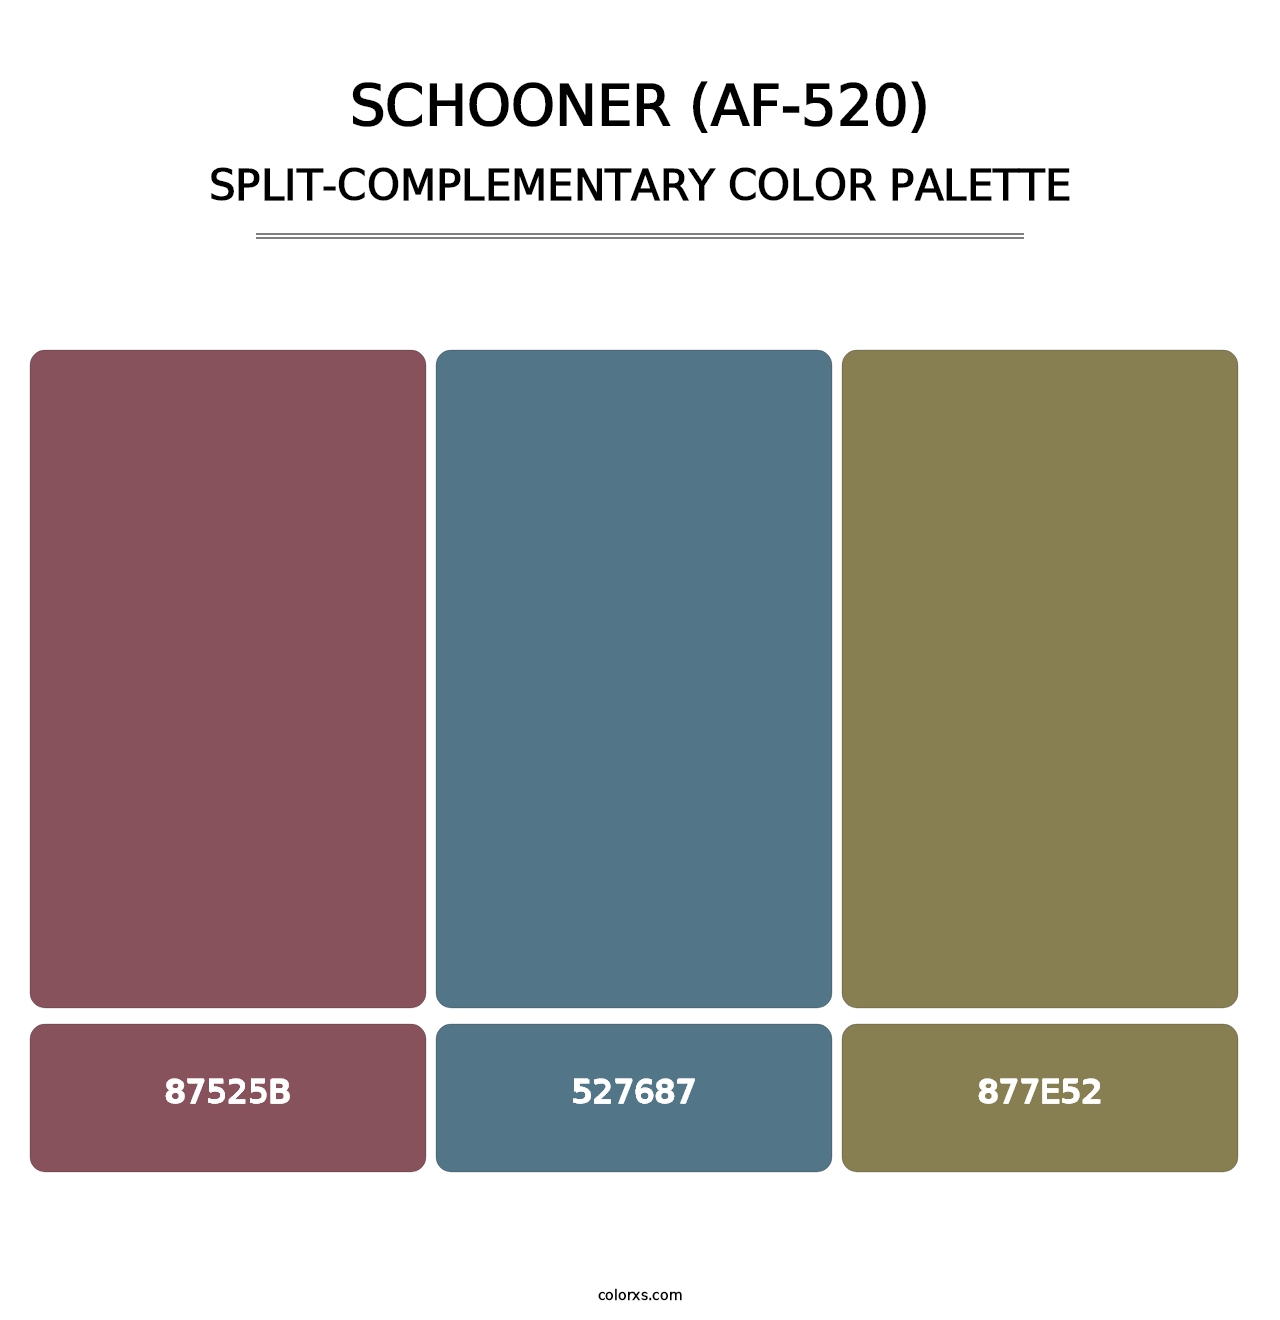 Schooner (AF-520) - Split-Complementary Color Palette